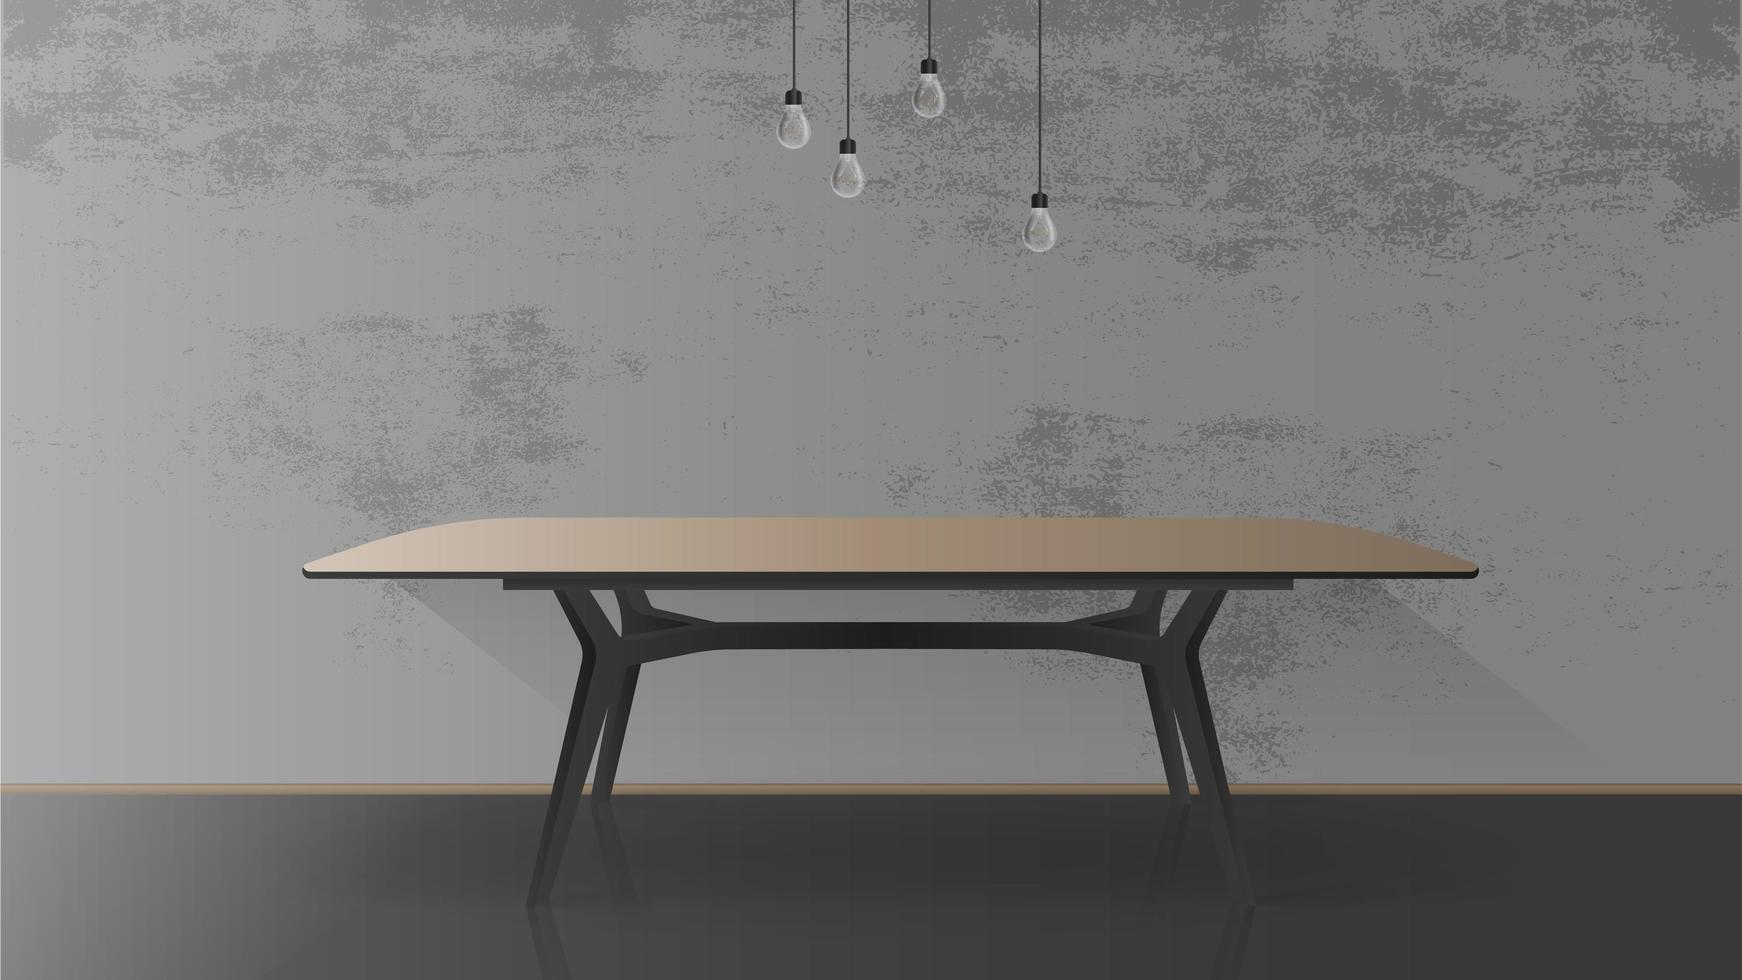 table en bois avec base en métal noir. table vide, gris, mur de béton. illustration vectorielle vecteur